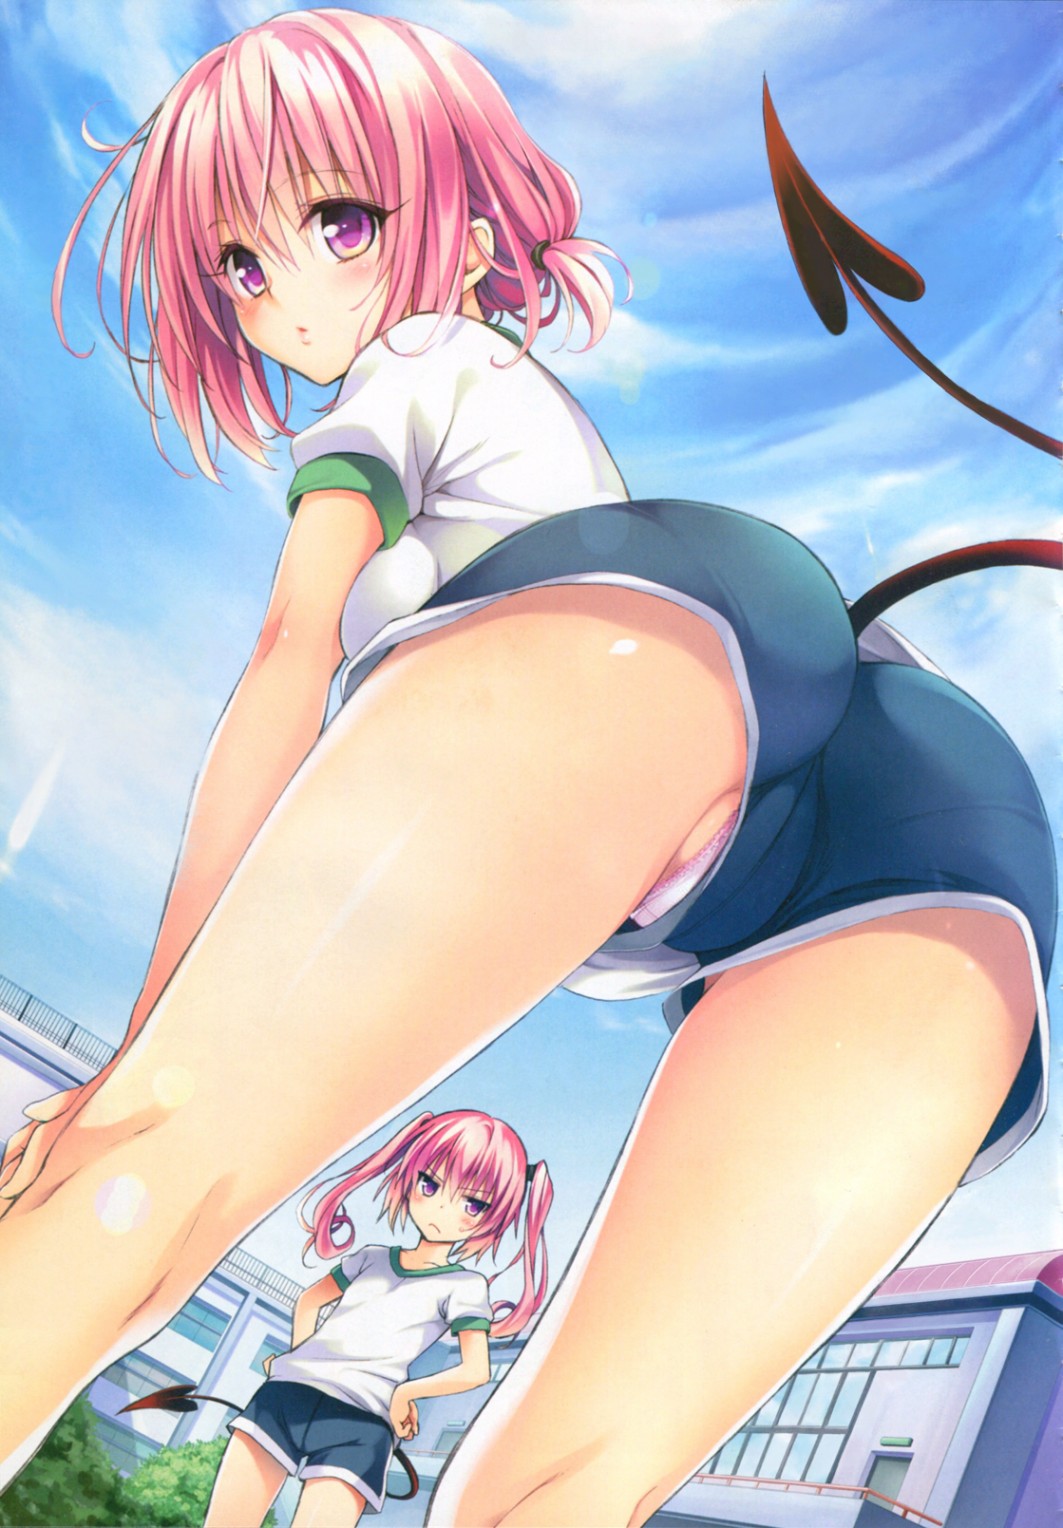 Anime Hentai Upskirt Sex - Anime schoolgirl with tail pov upskirt up shorts panties ...